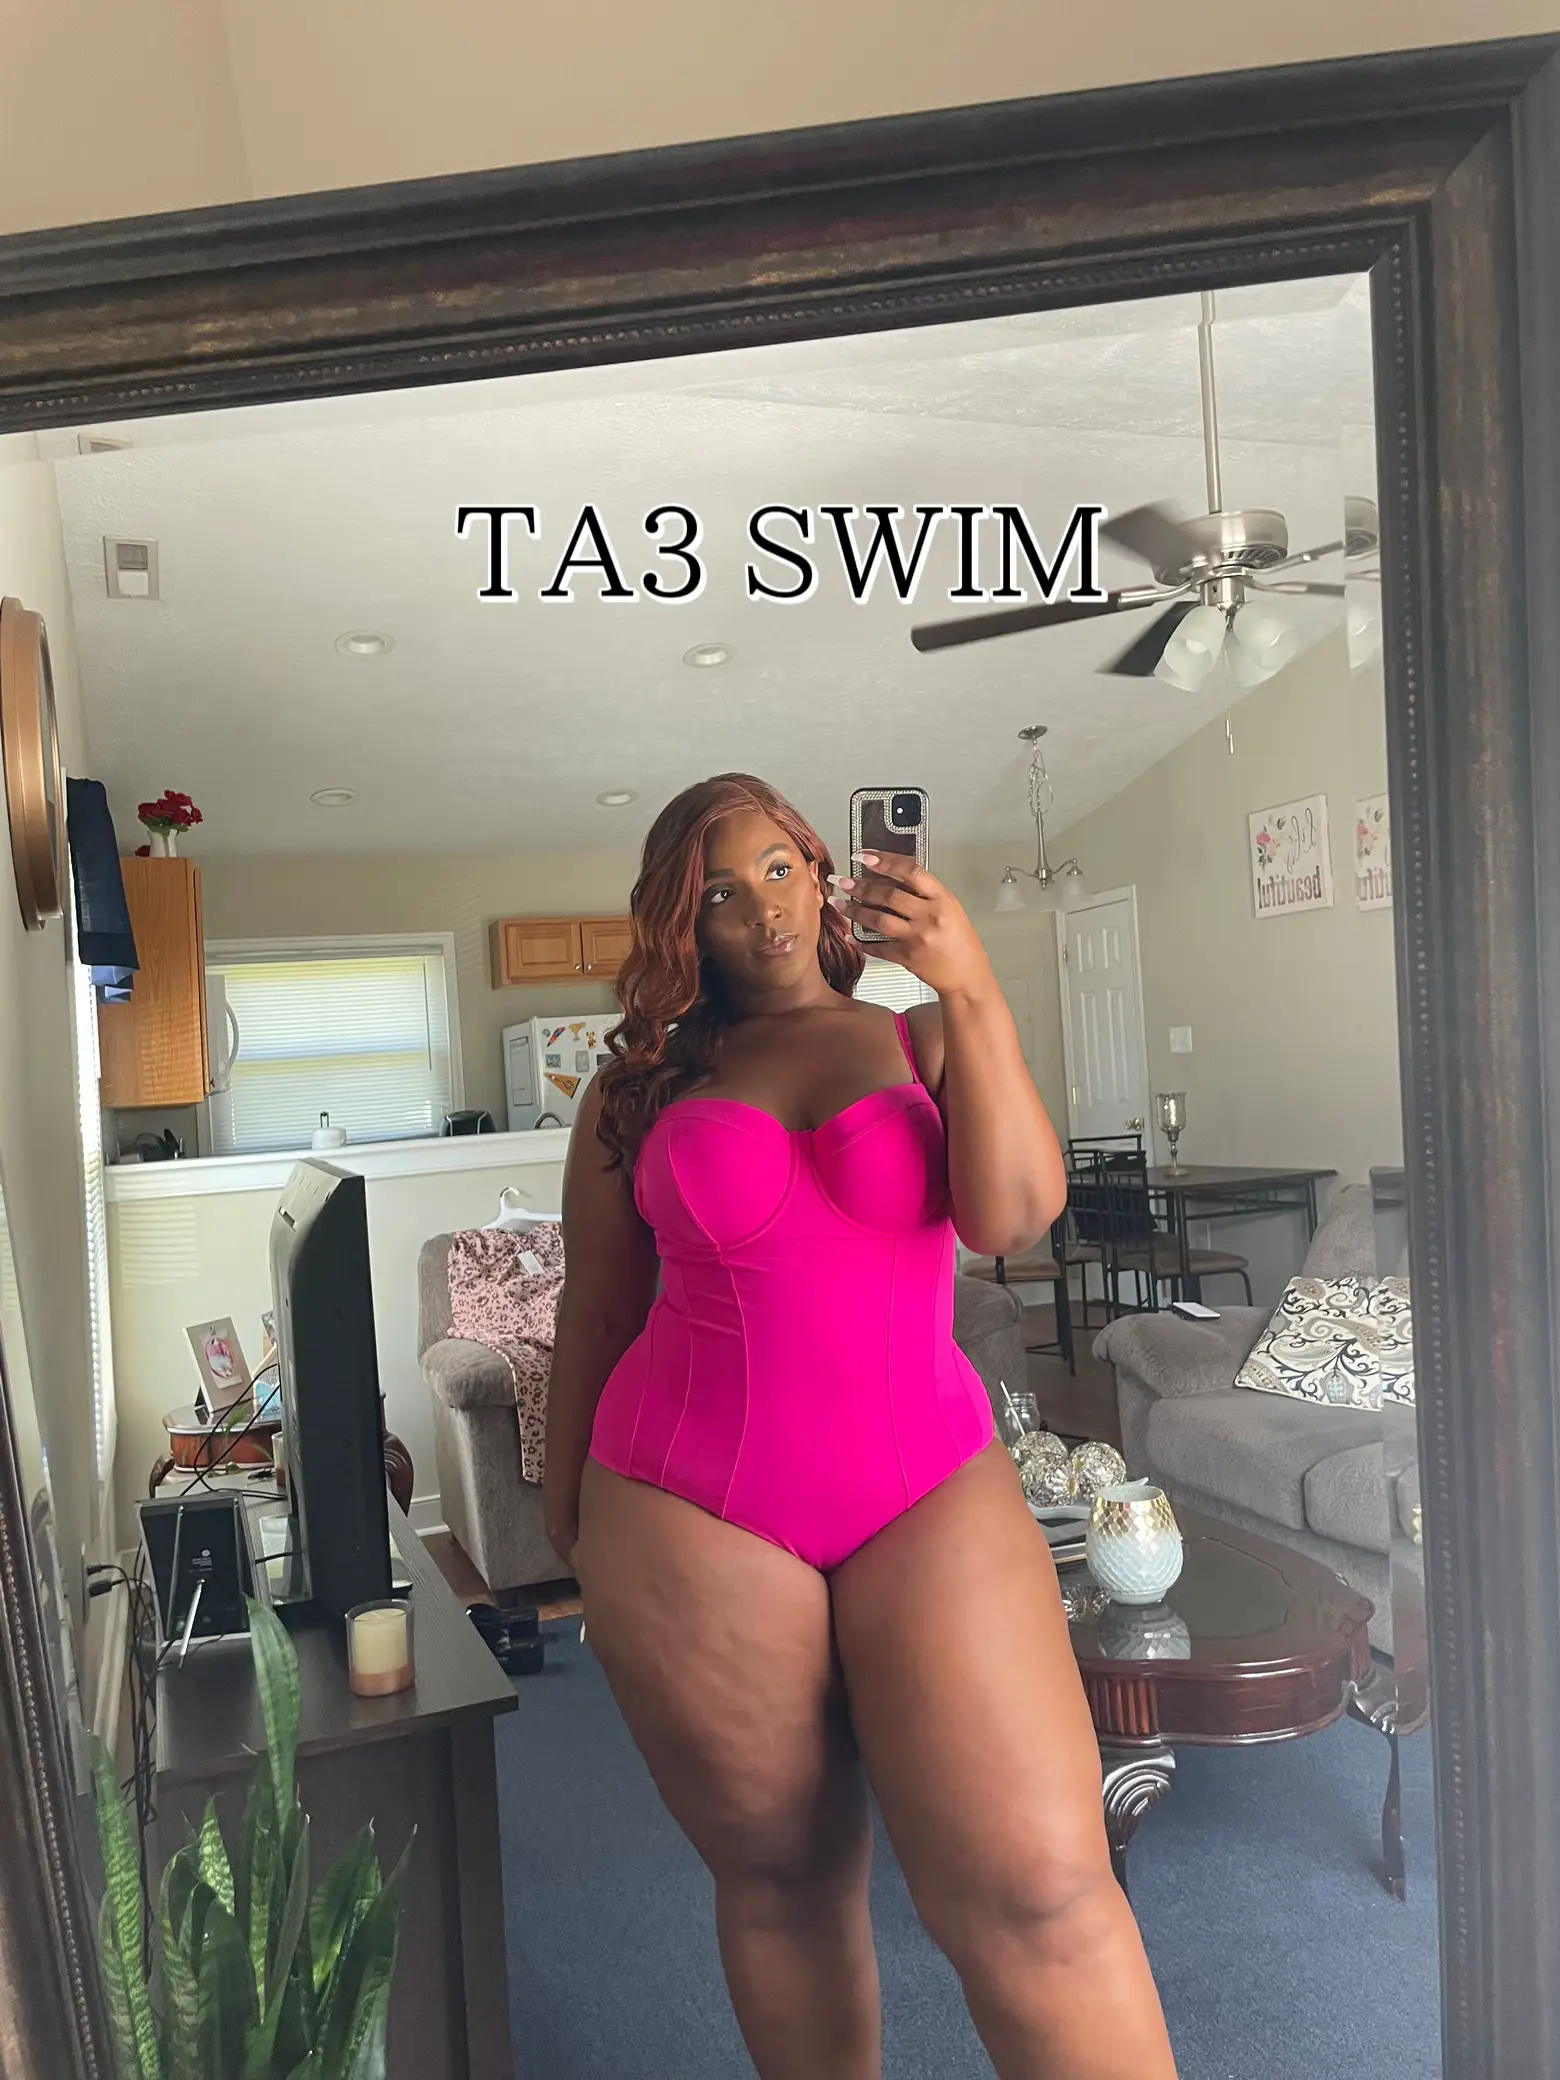 TA3, Swim, Ta3 Swimsuit